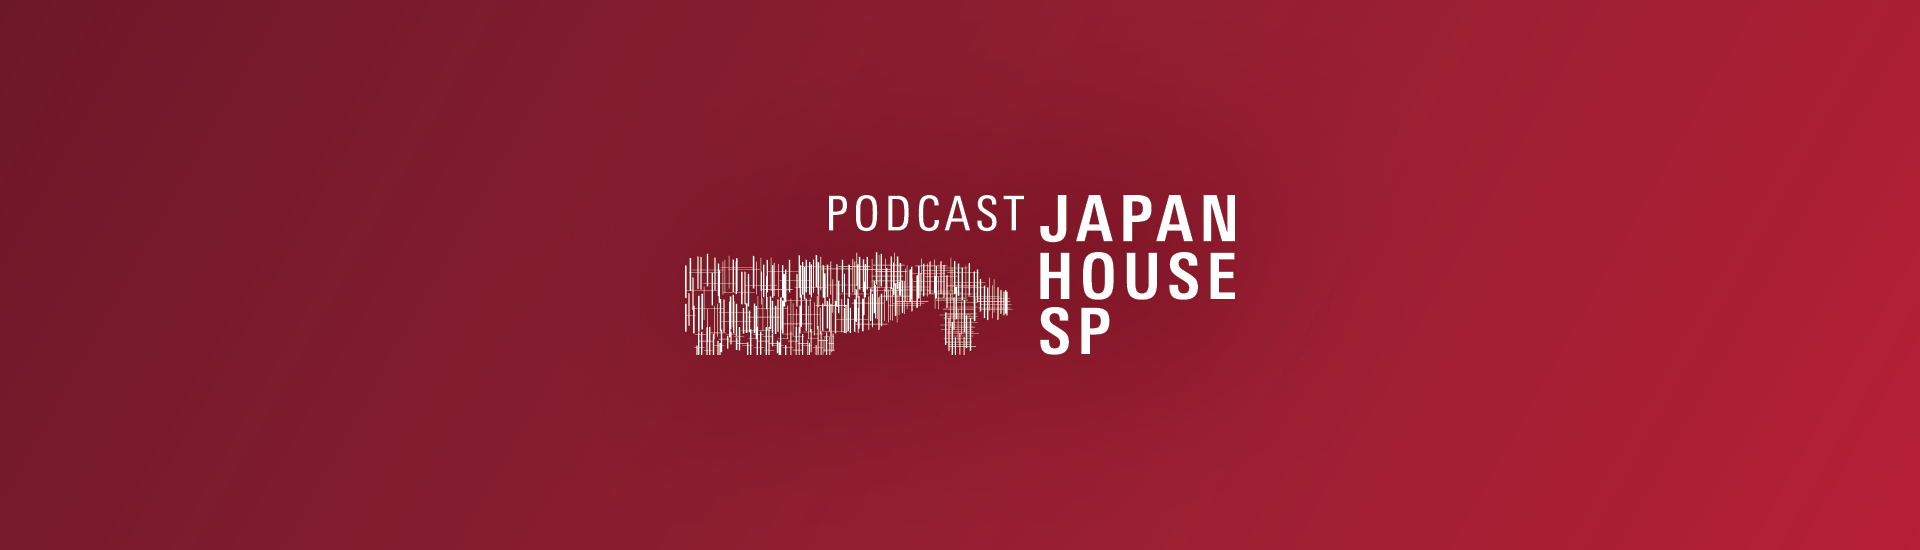 Podcast Japan House SP